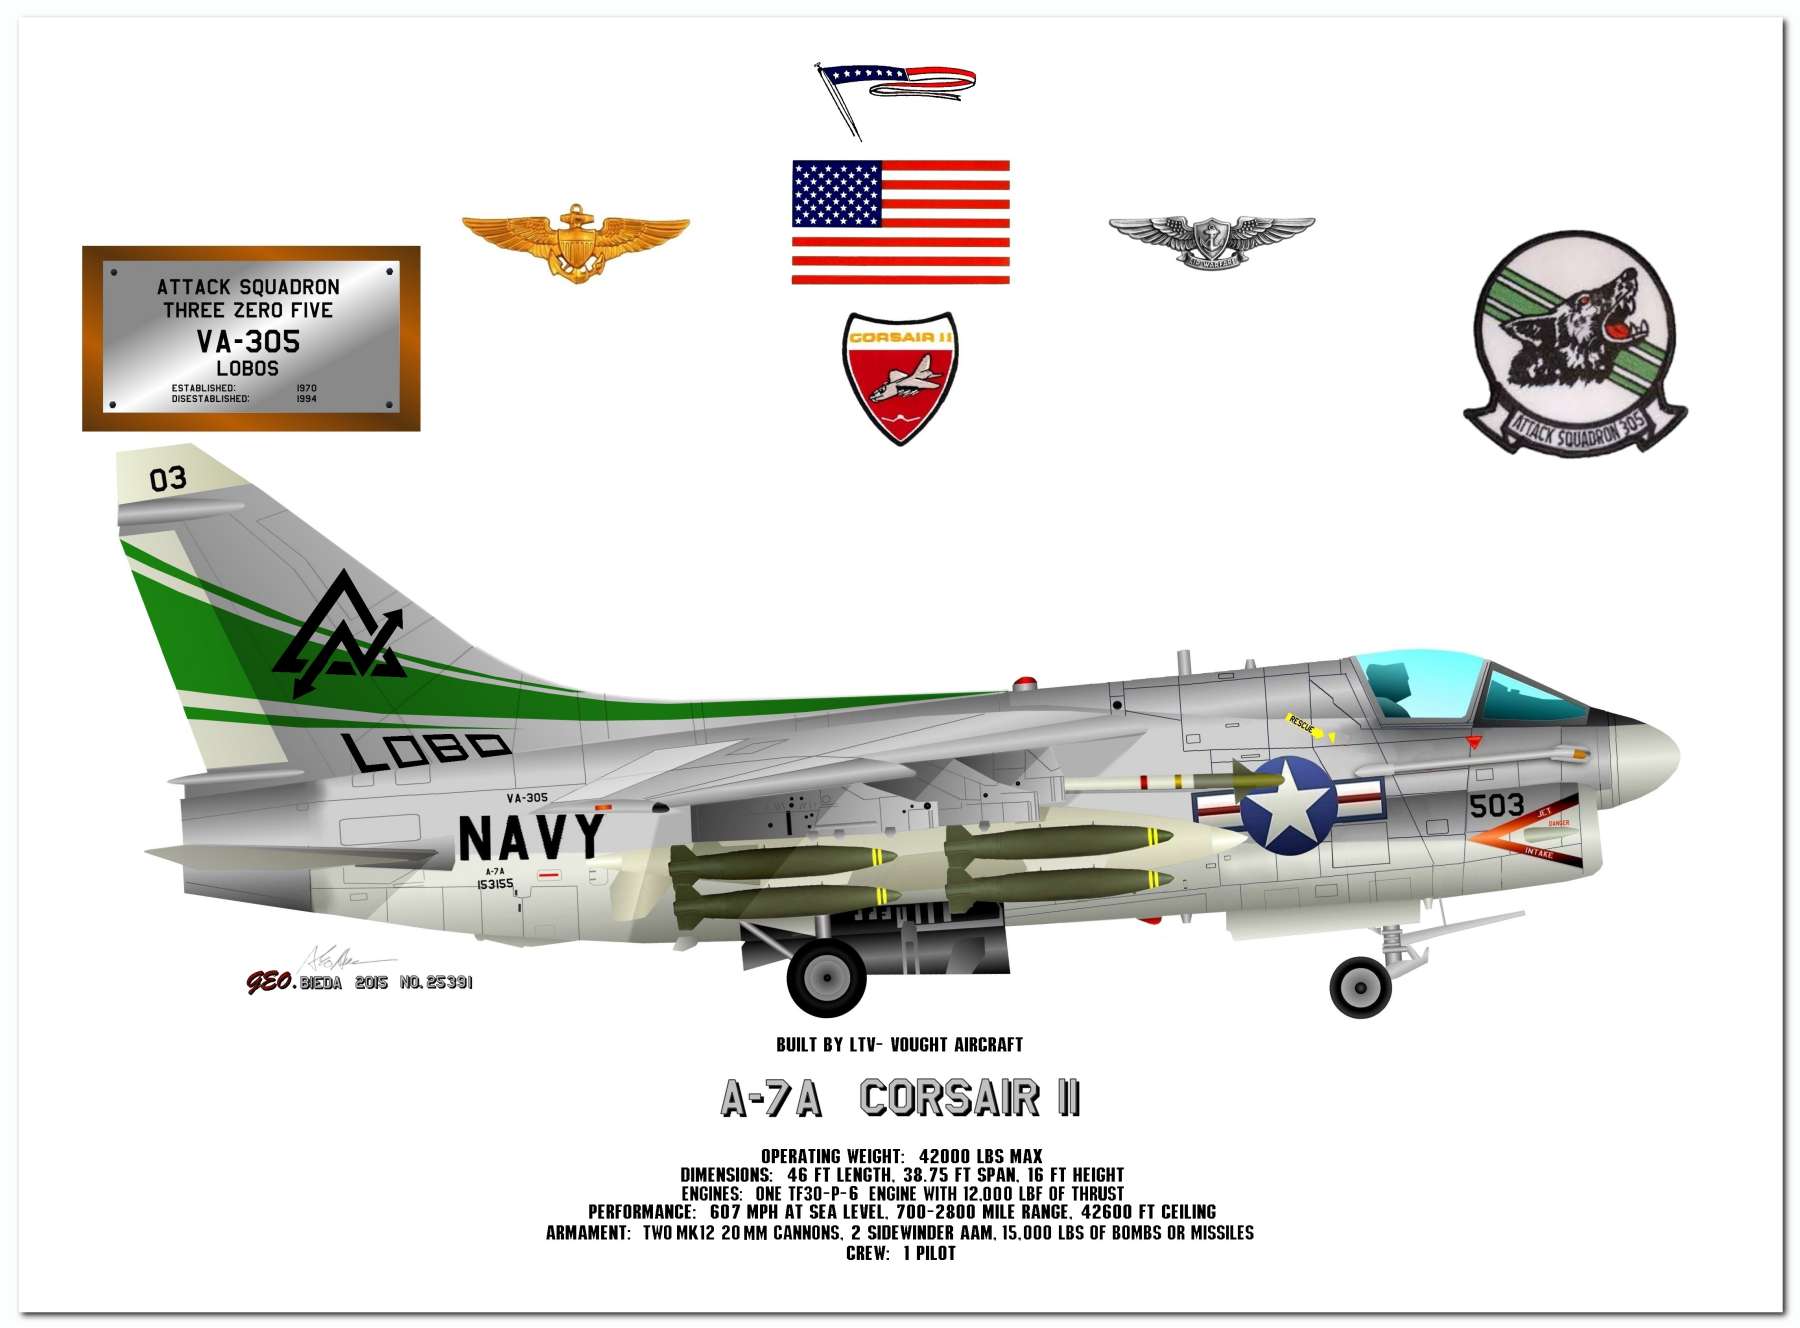  A-7 Corsair II Profile Drawings by George Bieda 